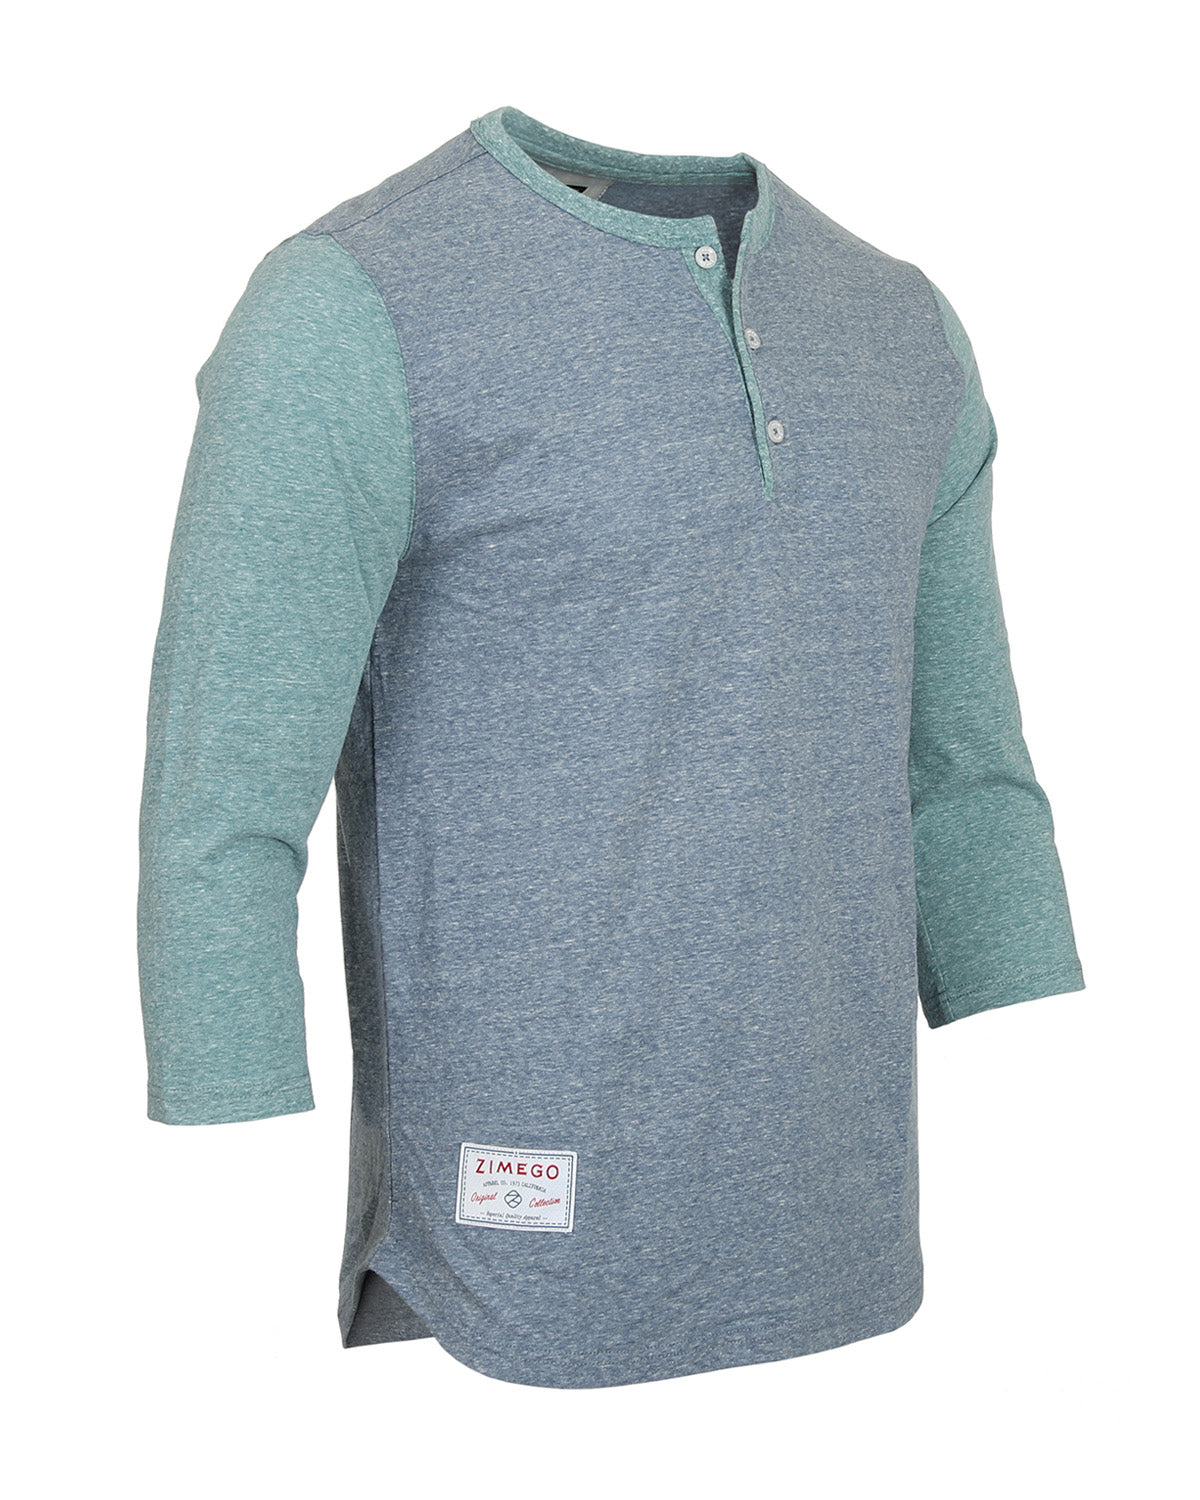 Men's 3/4 Sleeve Baseball Retro Henley – Casual Athletic Button Crewneck Shirts